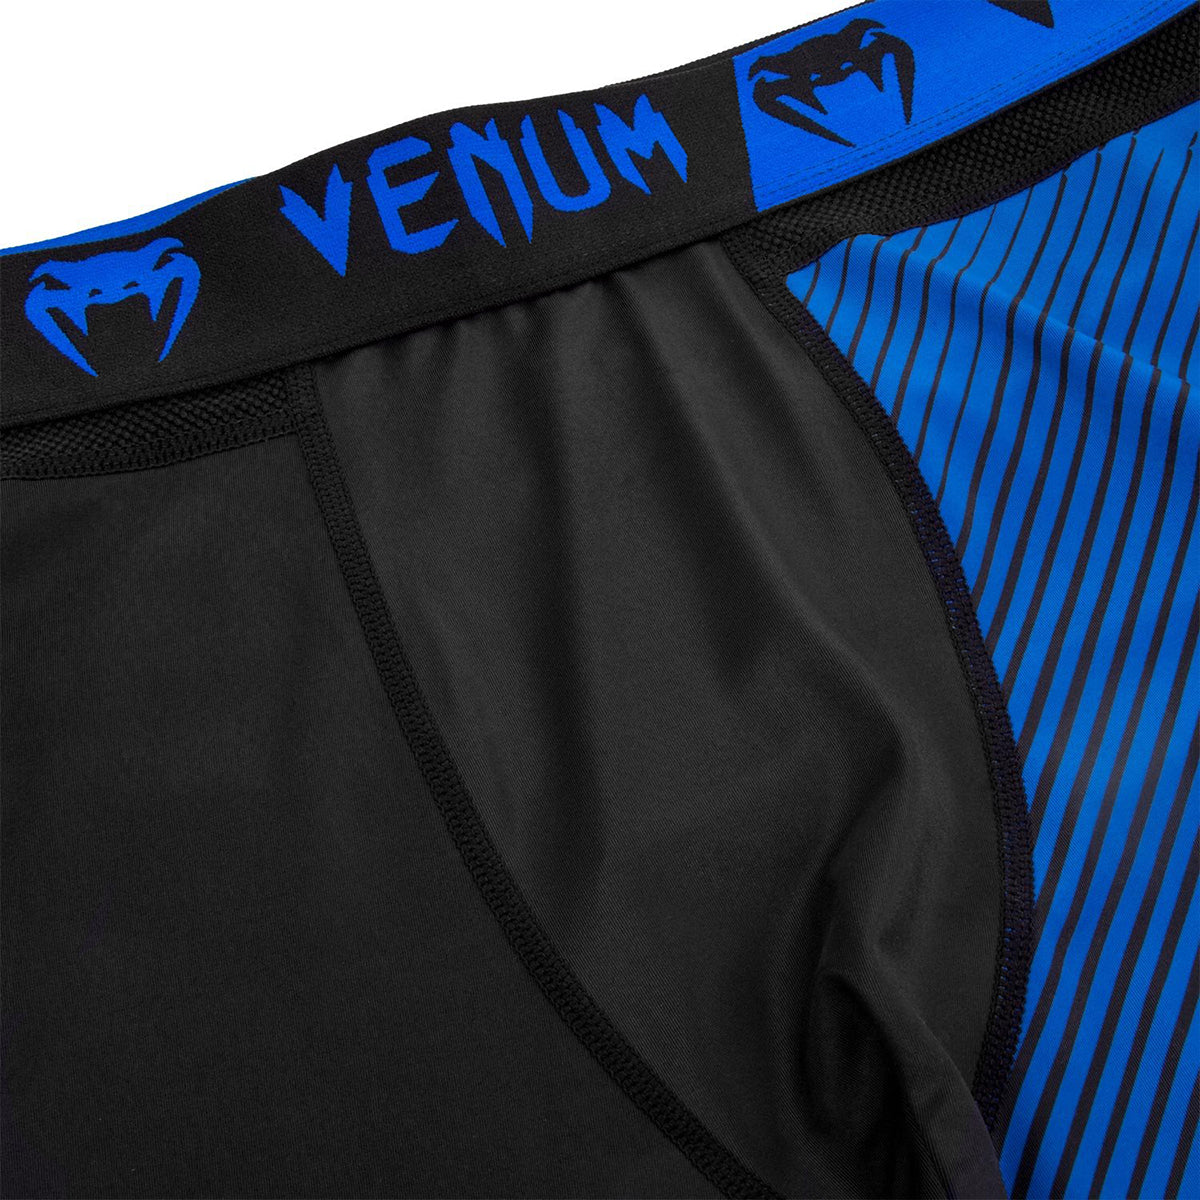 Venum No-Gi 2.0 MMA Compression Spats - Black/Blue Venum